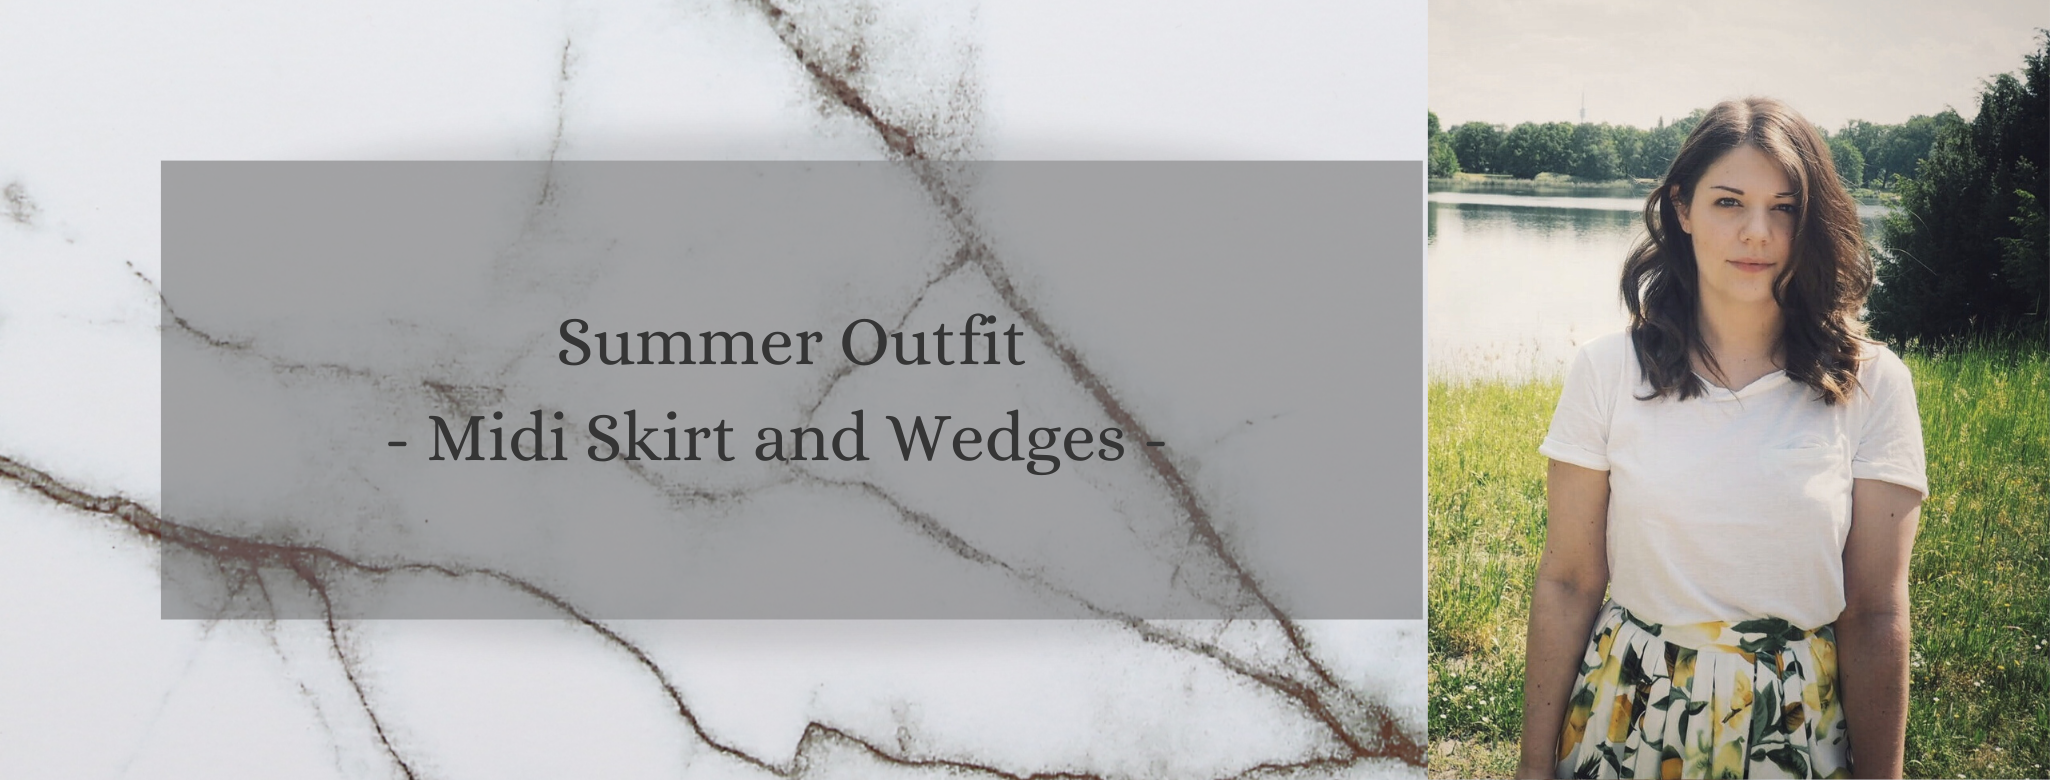 Summer Outfit: Zitronen Print und Wedges